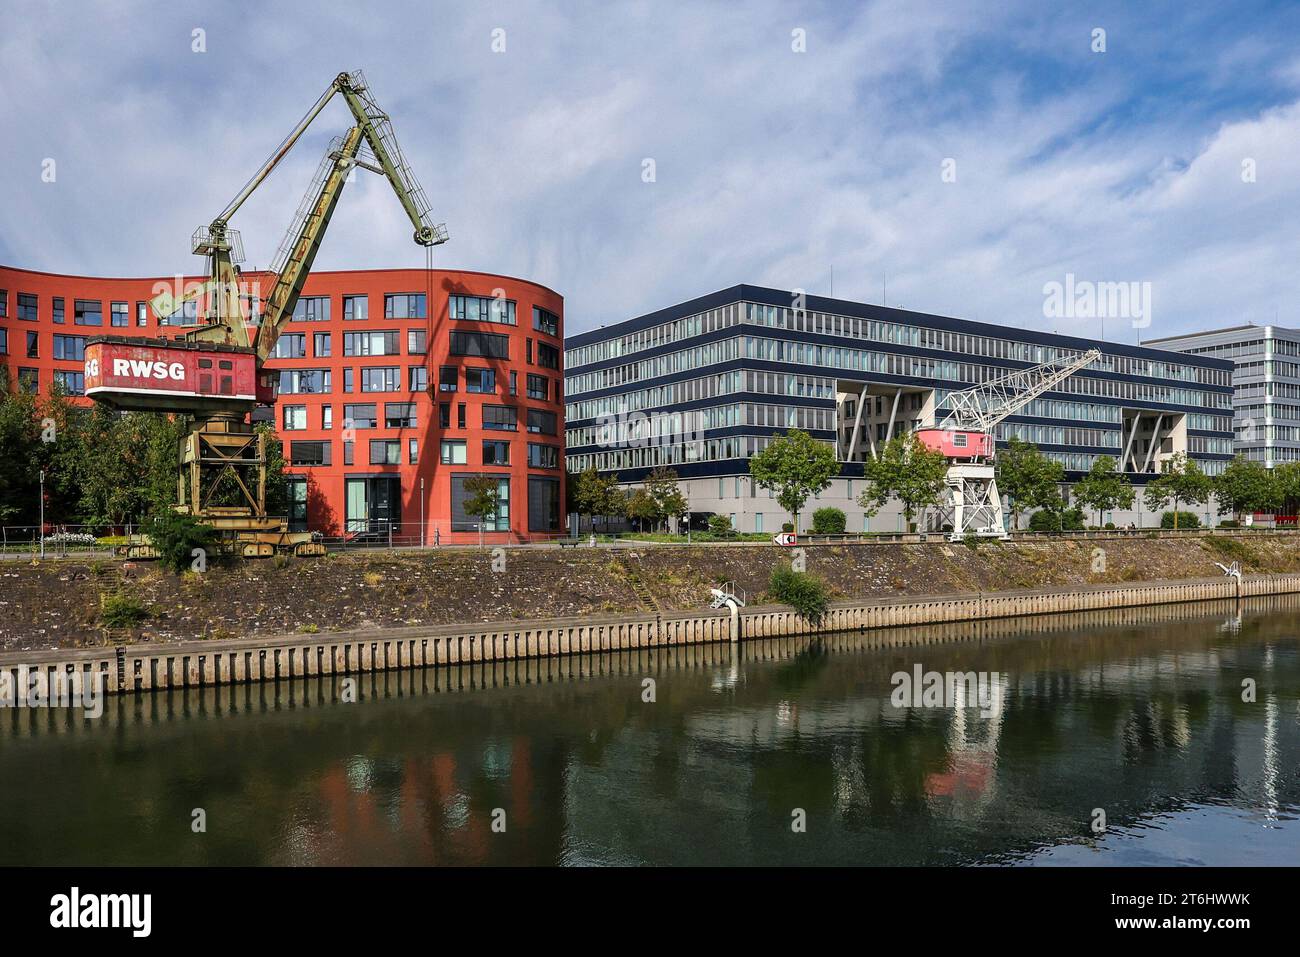 Duisburg, Ruhrgebiet, Nordrhein-Westfalen, Deutschland - Duisburger Innenhafen mit dem wellenförmigen Gebäude des Landesarchivs Nordrhein-Westfalen und alten Hafenkranen. Auf der rechten Seite moderne Bürogebäude. Stockfoto